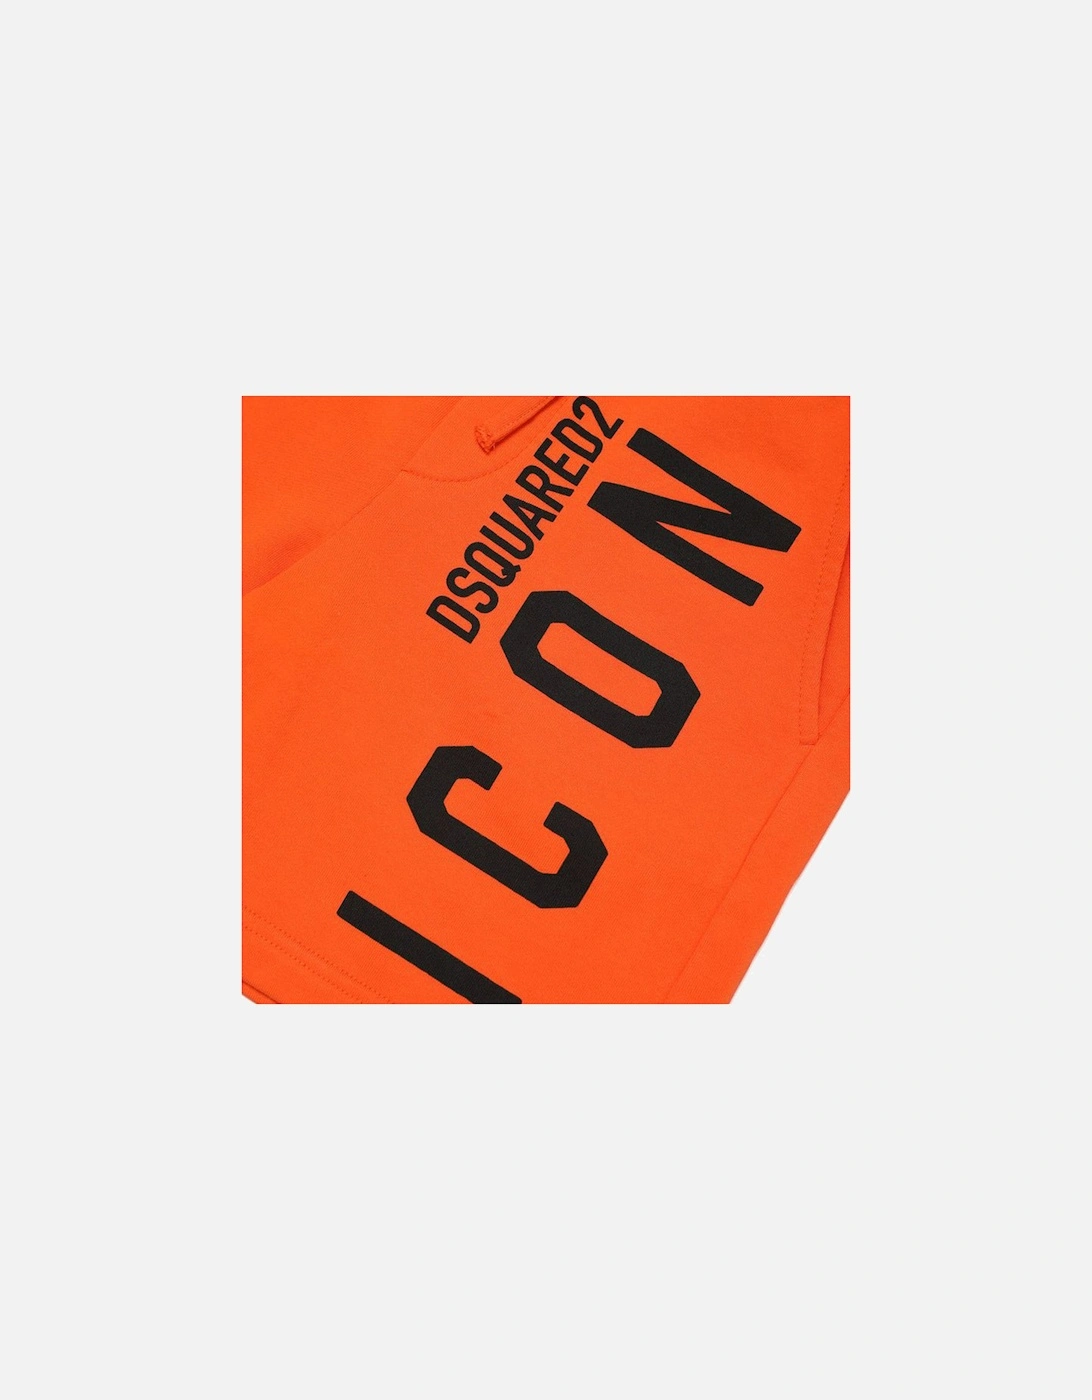 Boys Icon Logo Cotton Shorts Orange